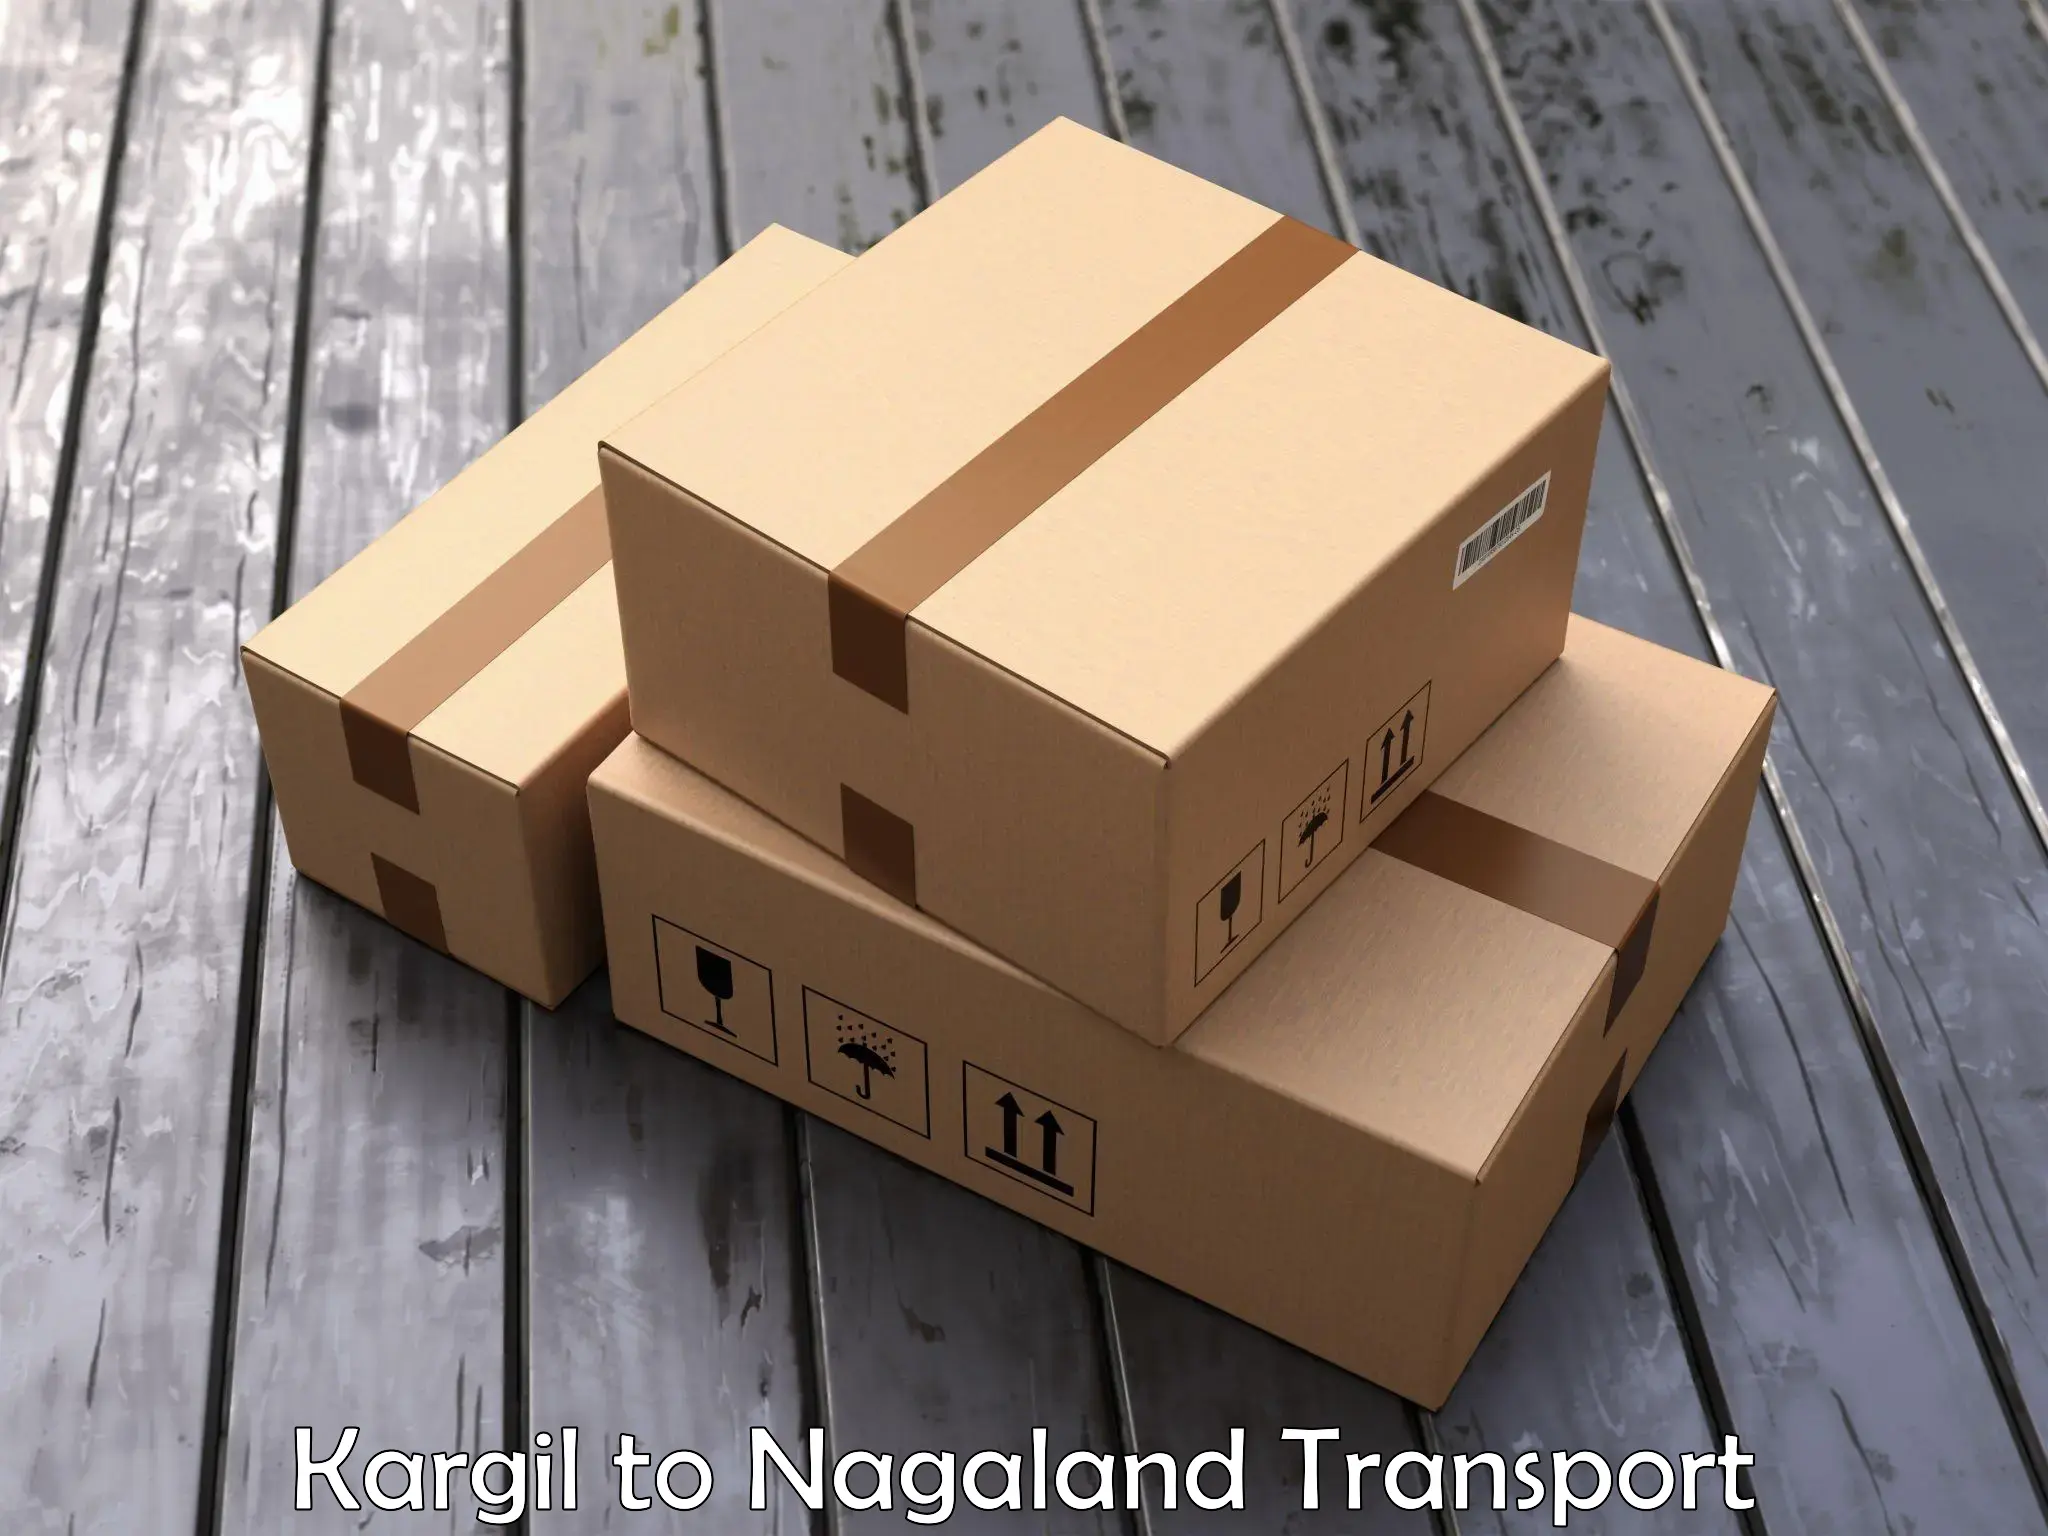 Nationwide transport services Kargil to Nagaland